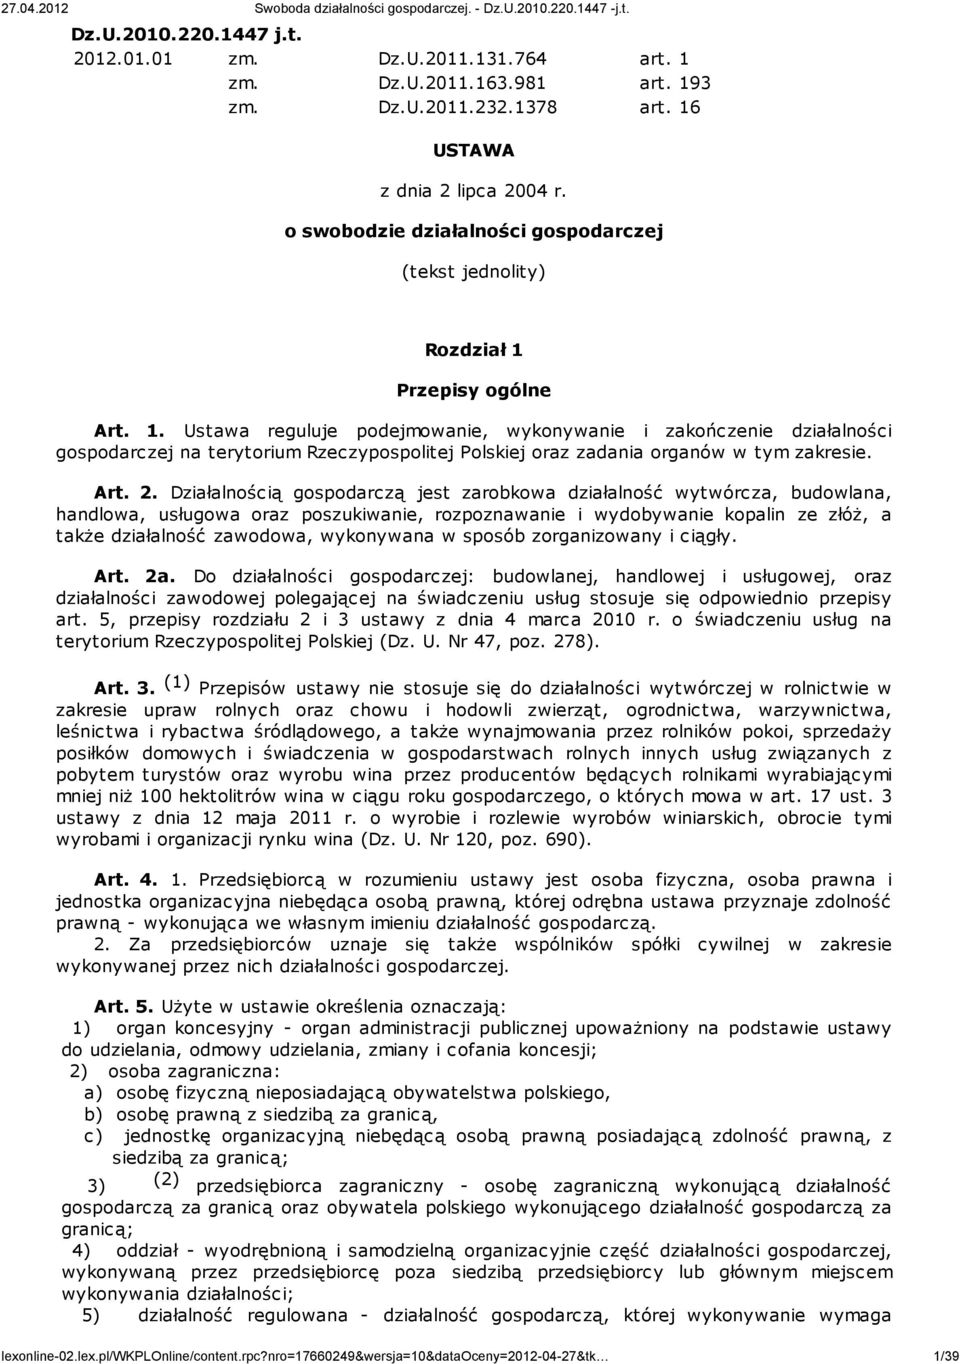 Przepisy ogólne Art. 1. Ustawa reguluje podejmowanie, wykonywanie i zakończenie działalności gospodarczej na terytorium Rzeczypospolitej Polskiej oraz zadania organów w tym zakresie. Art. 2.